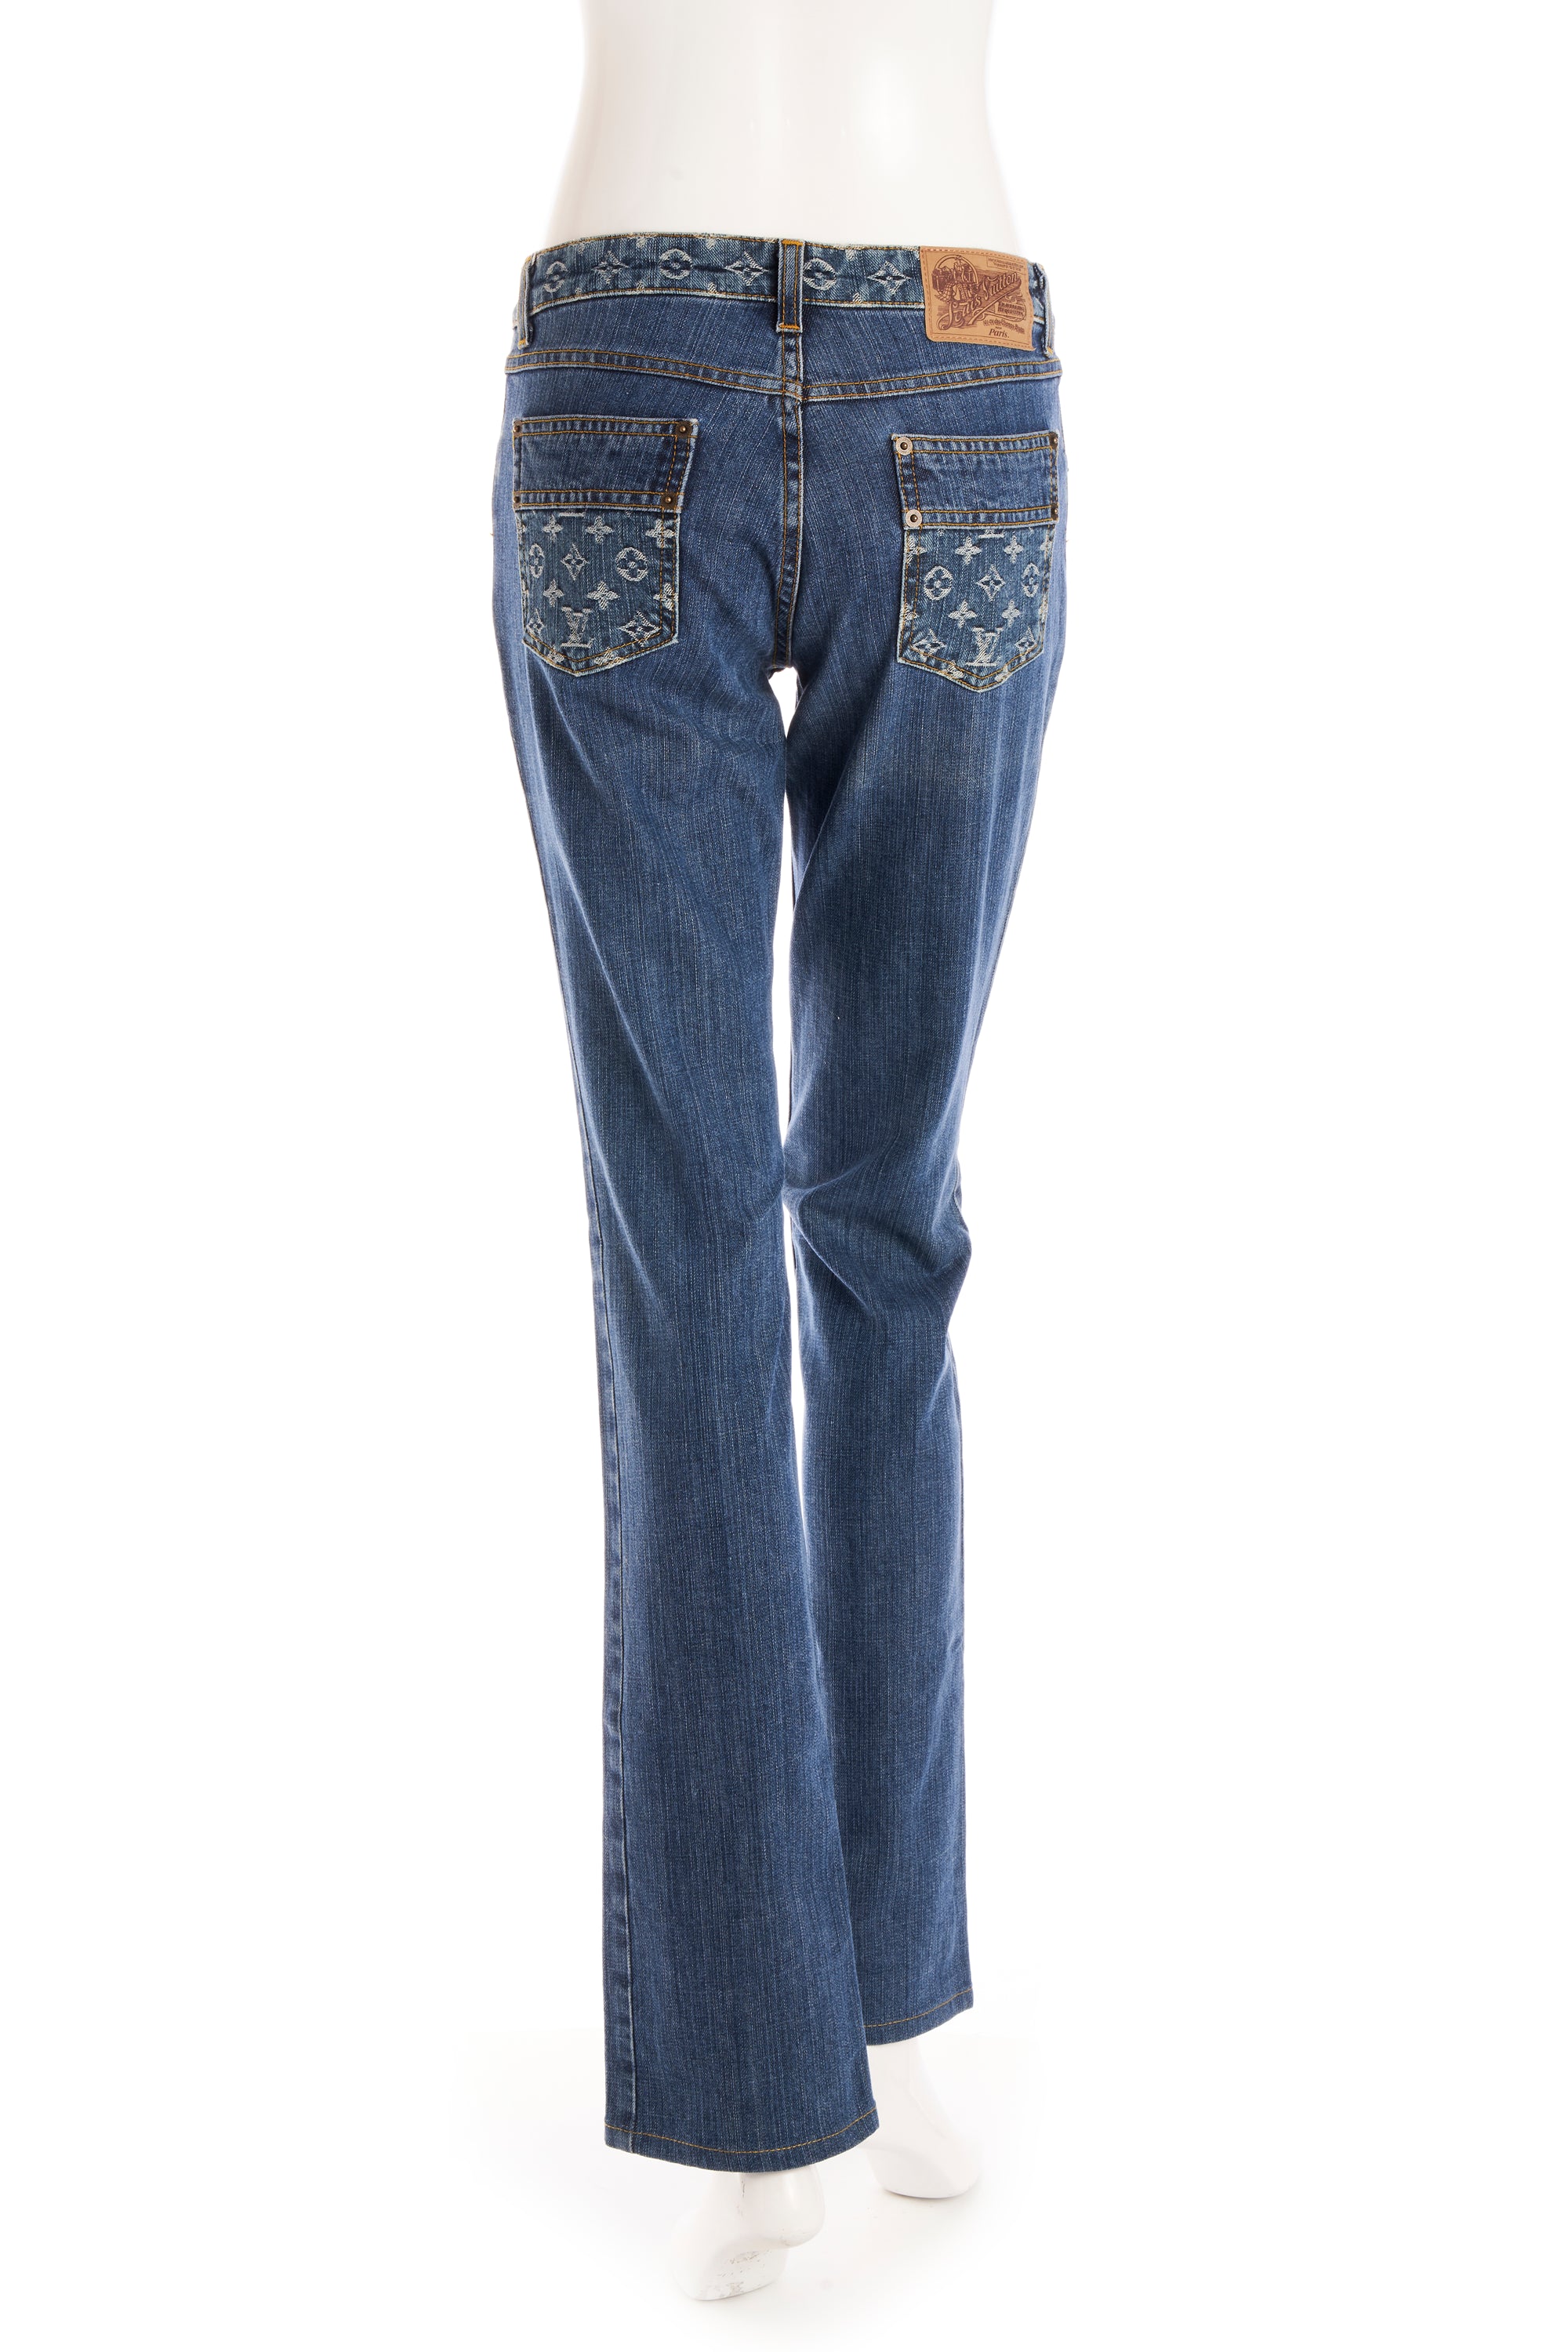 Louis Vuitton Monogram Low Rise Jeans 38/4